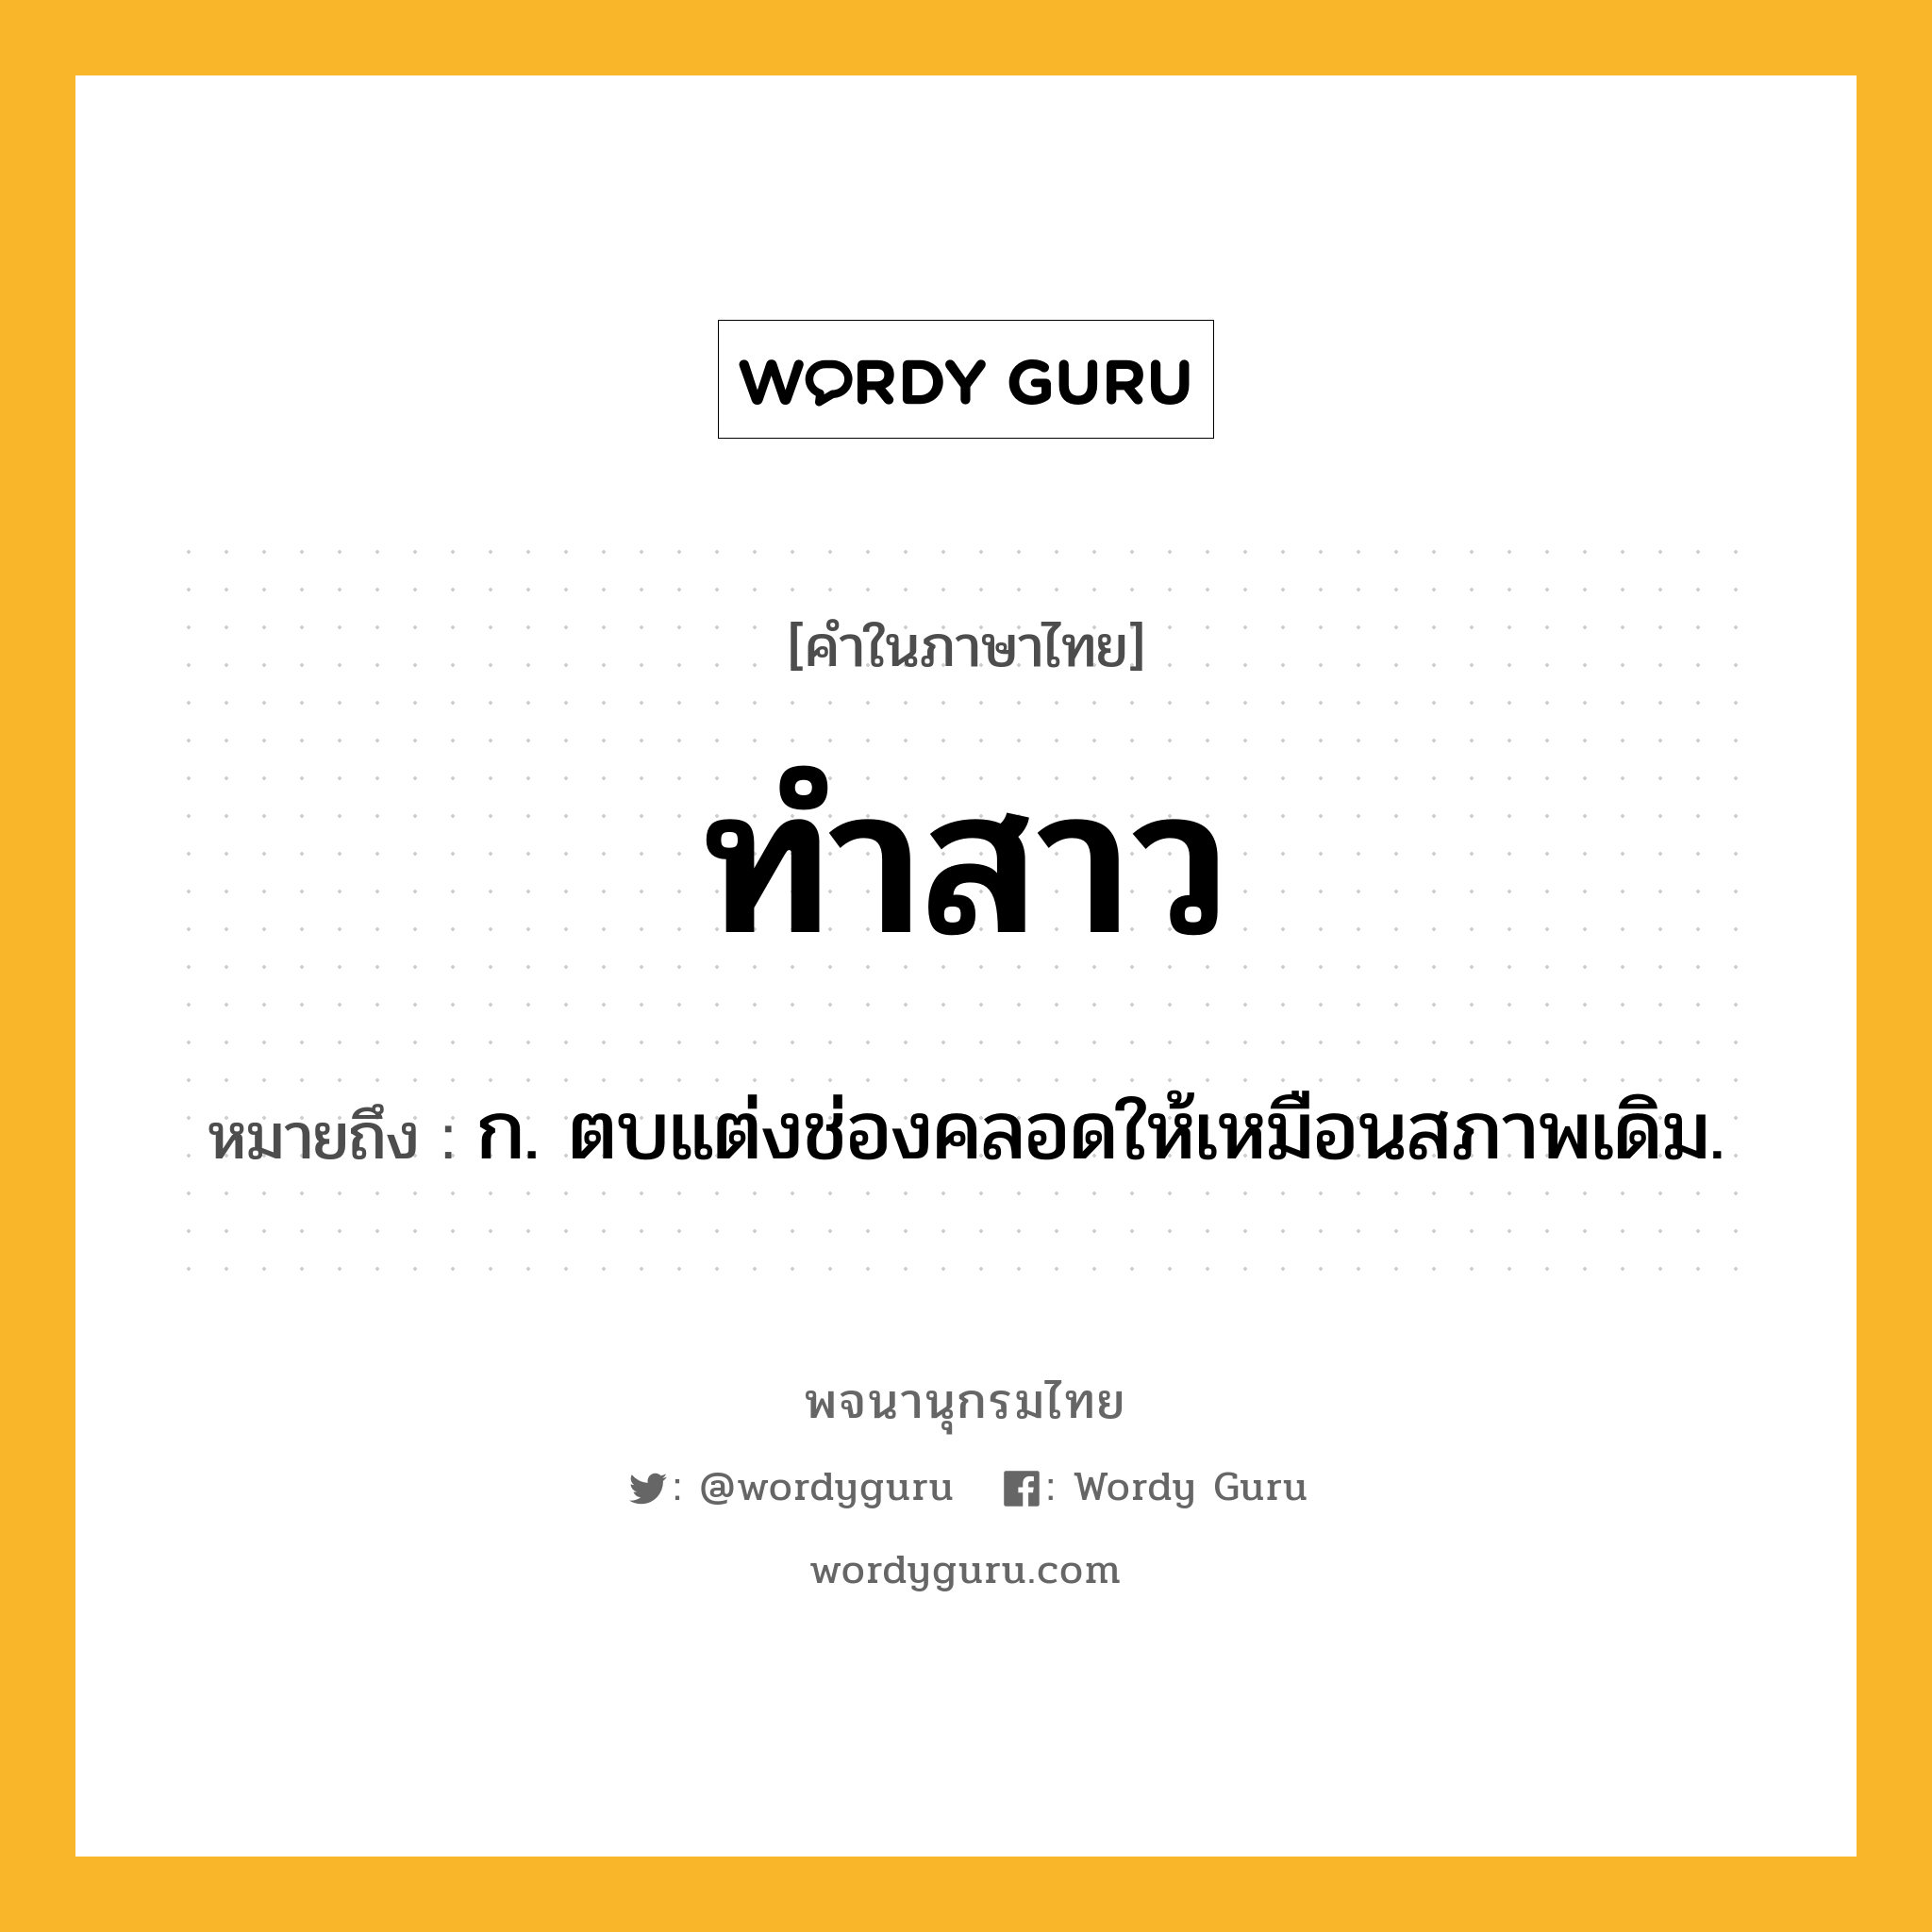 ทำสาว ความหมาย หมายถึงอะไร?, คำในภาษาไทย ทำสาว หมายถึง ก. ตบแต่งช่องคลอดให้เหมือนสภาพเดิม.